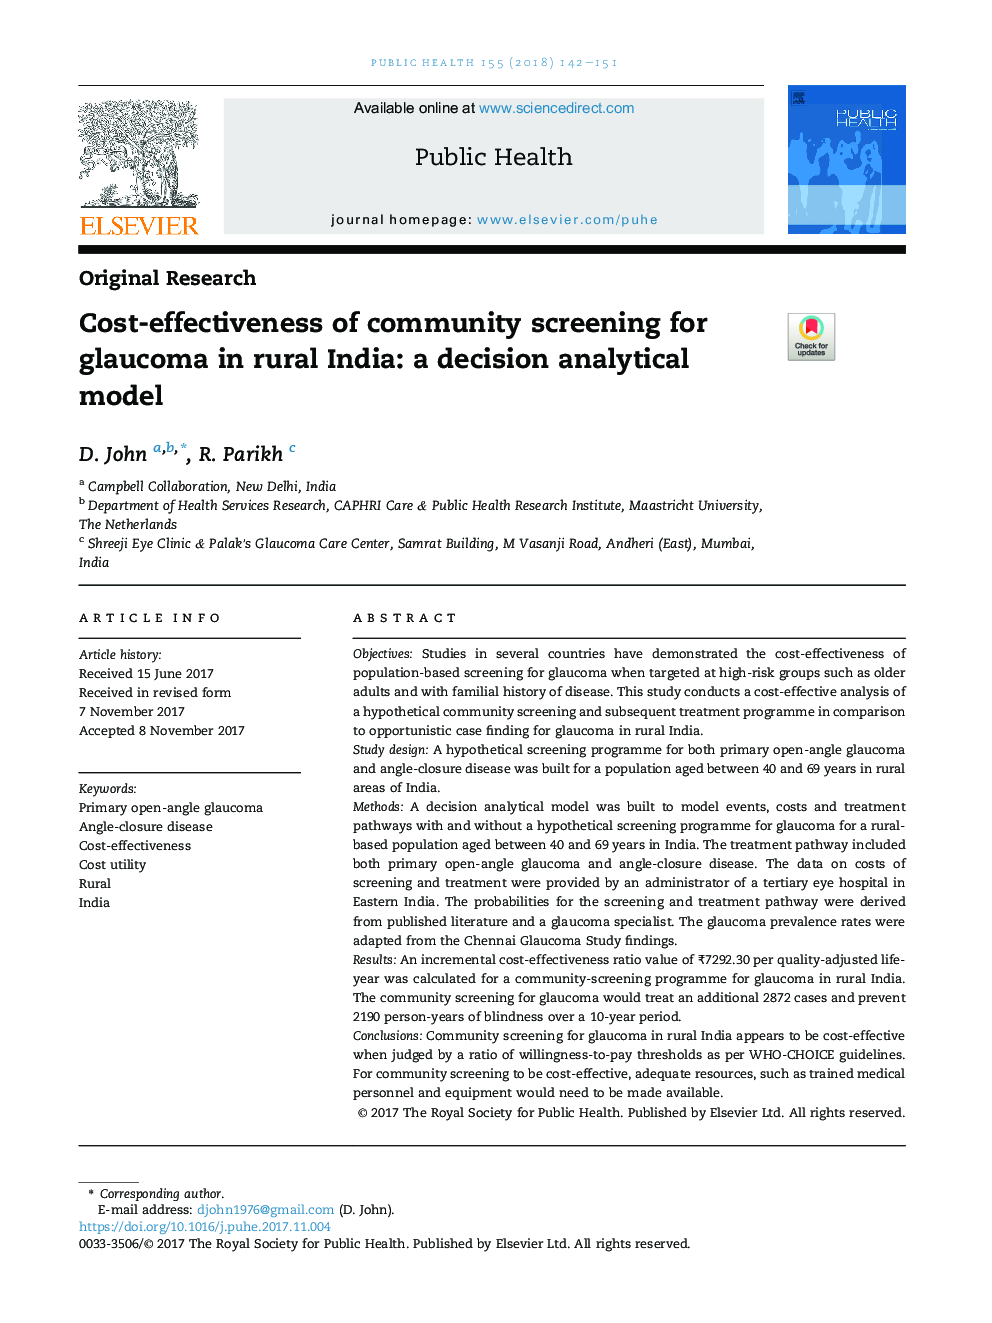 اثربخشی هزینه ای غربالگری جامعه برای  گلوکوم دربخش روستایی هند: یک مدل تحلیلی جهت تصمیم گیری